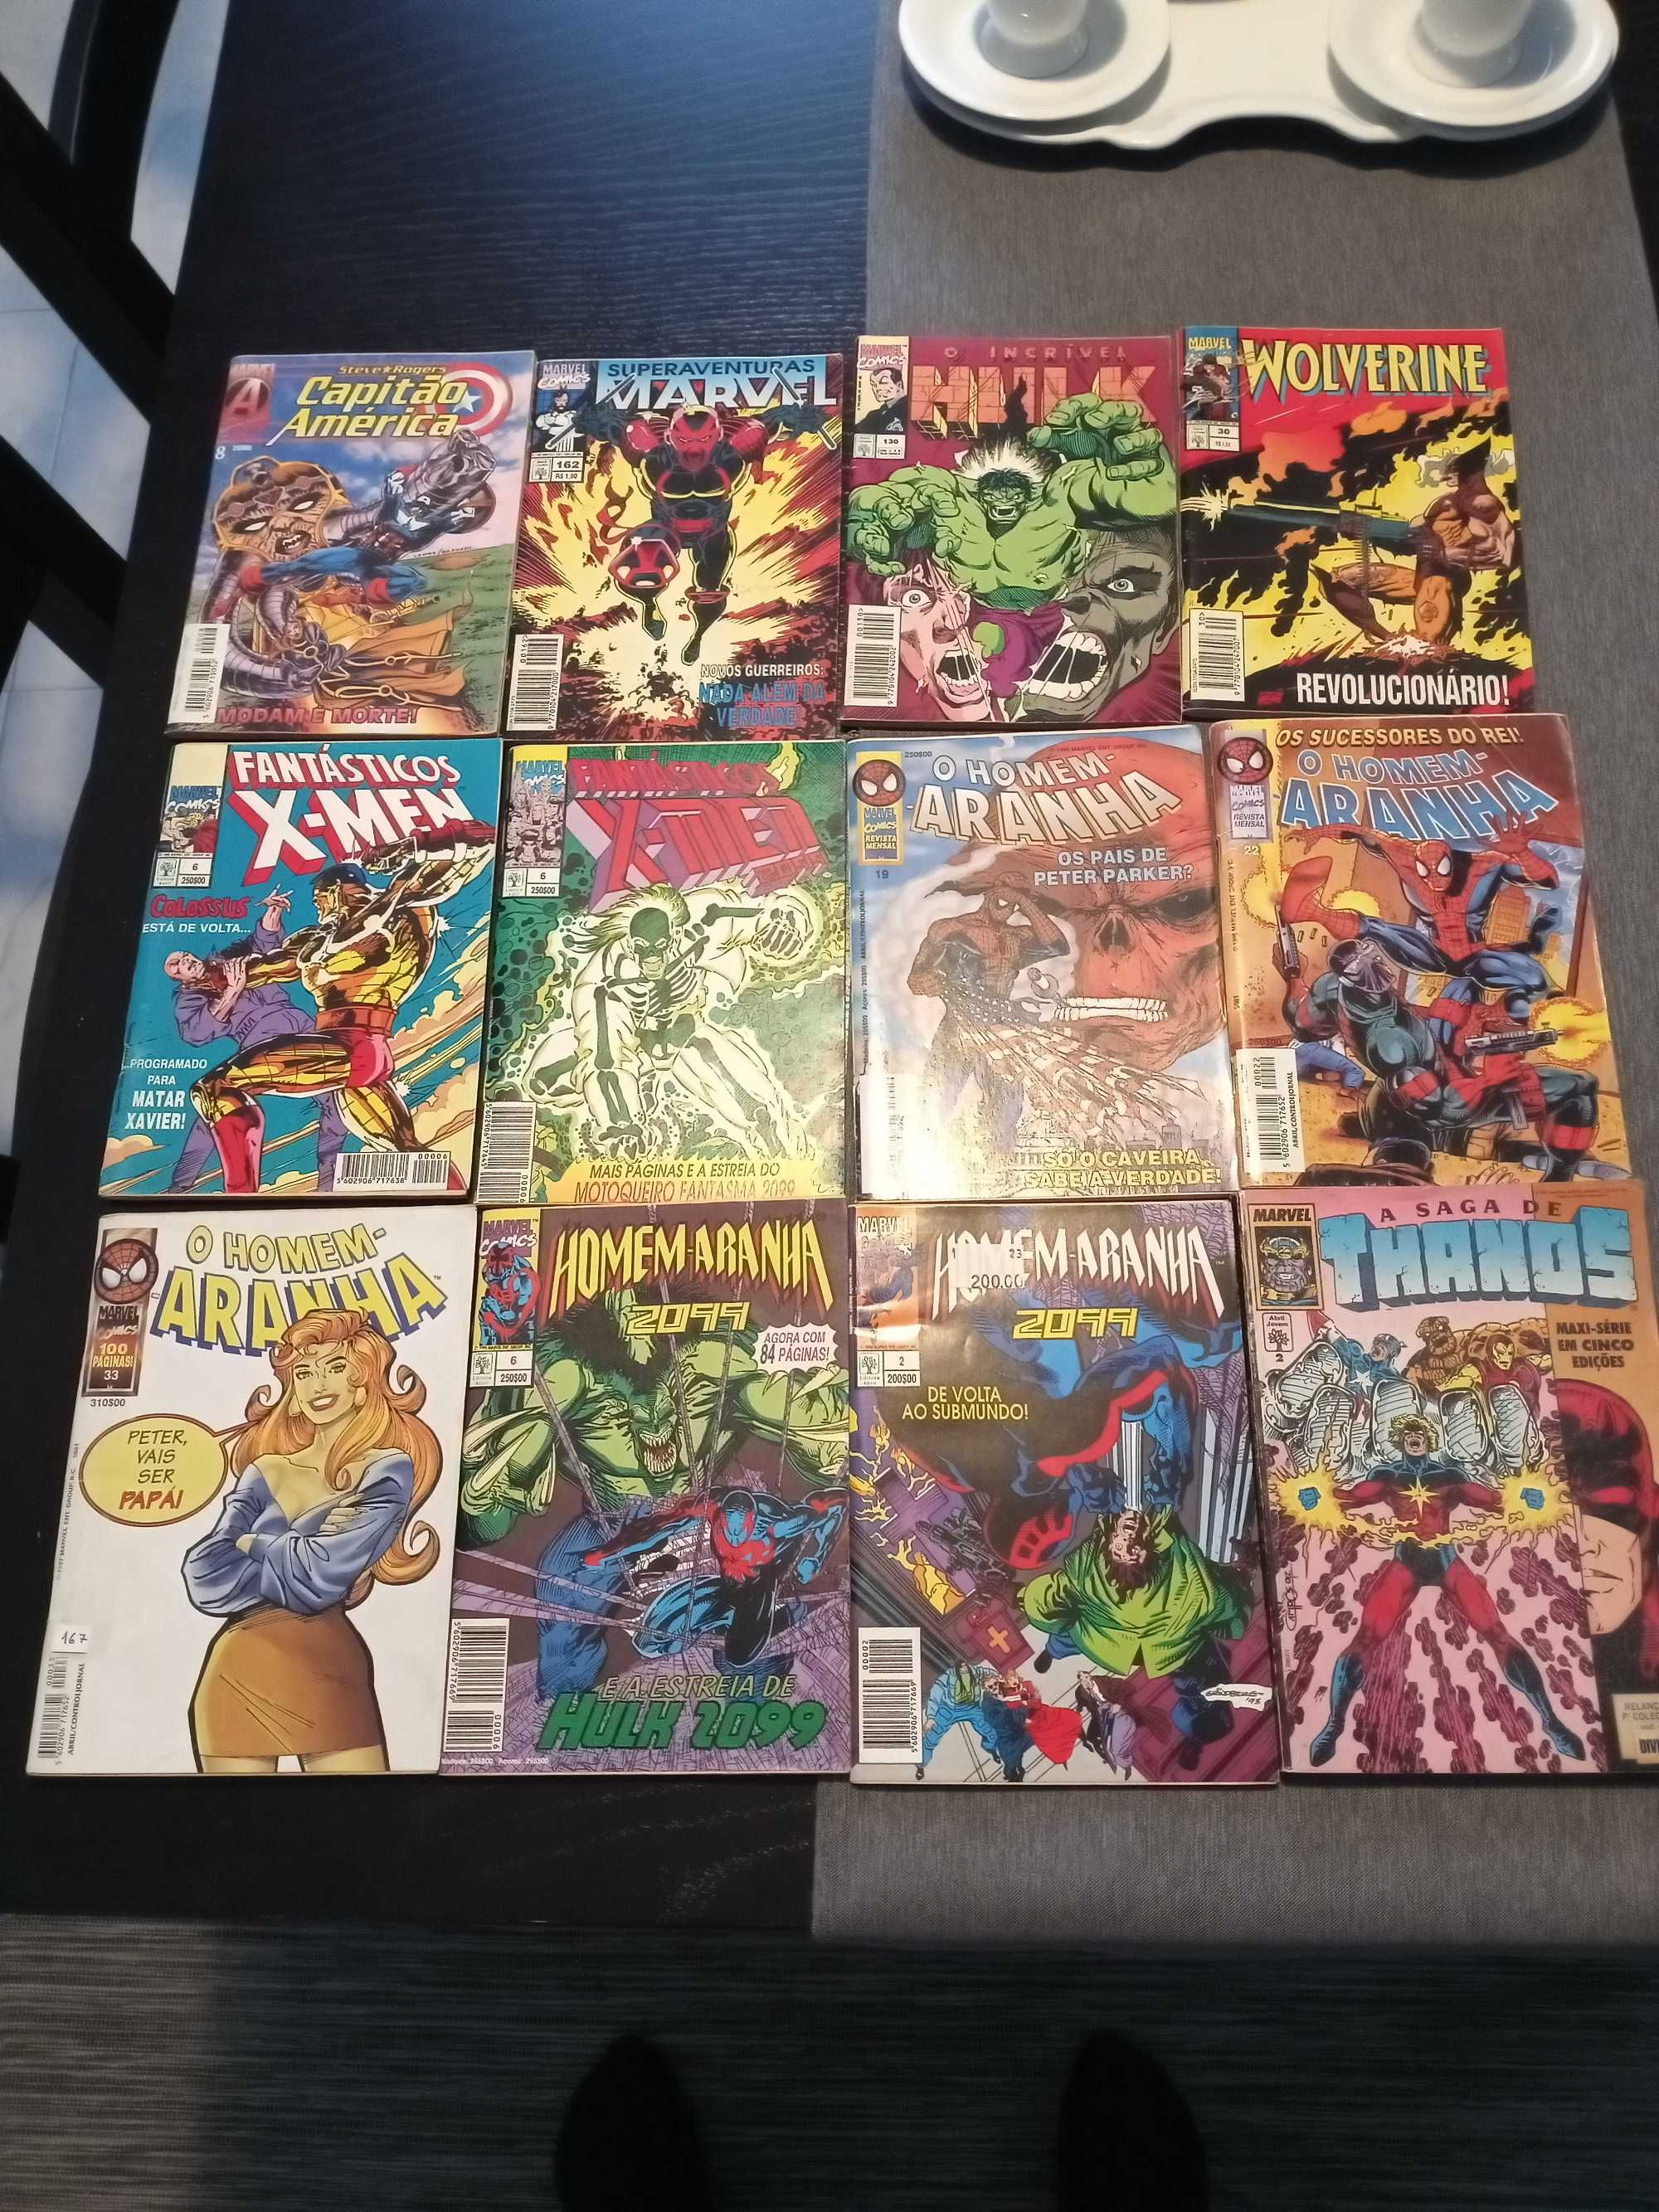 Livros revistas cómica Marvel  homem-aranha Wolverine outros